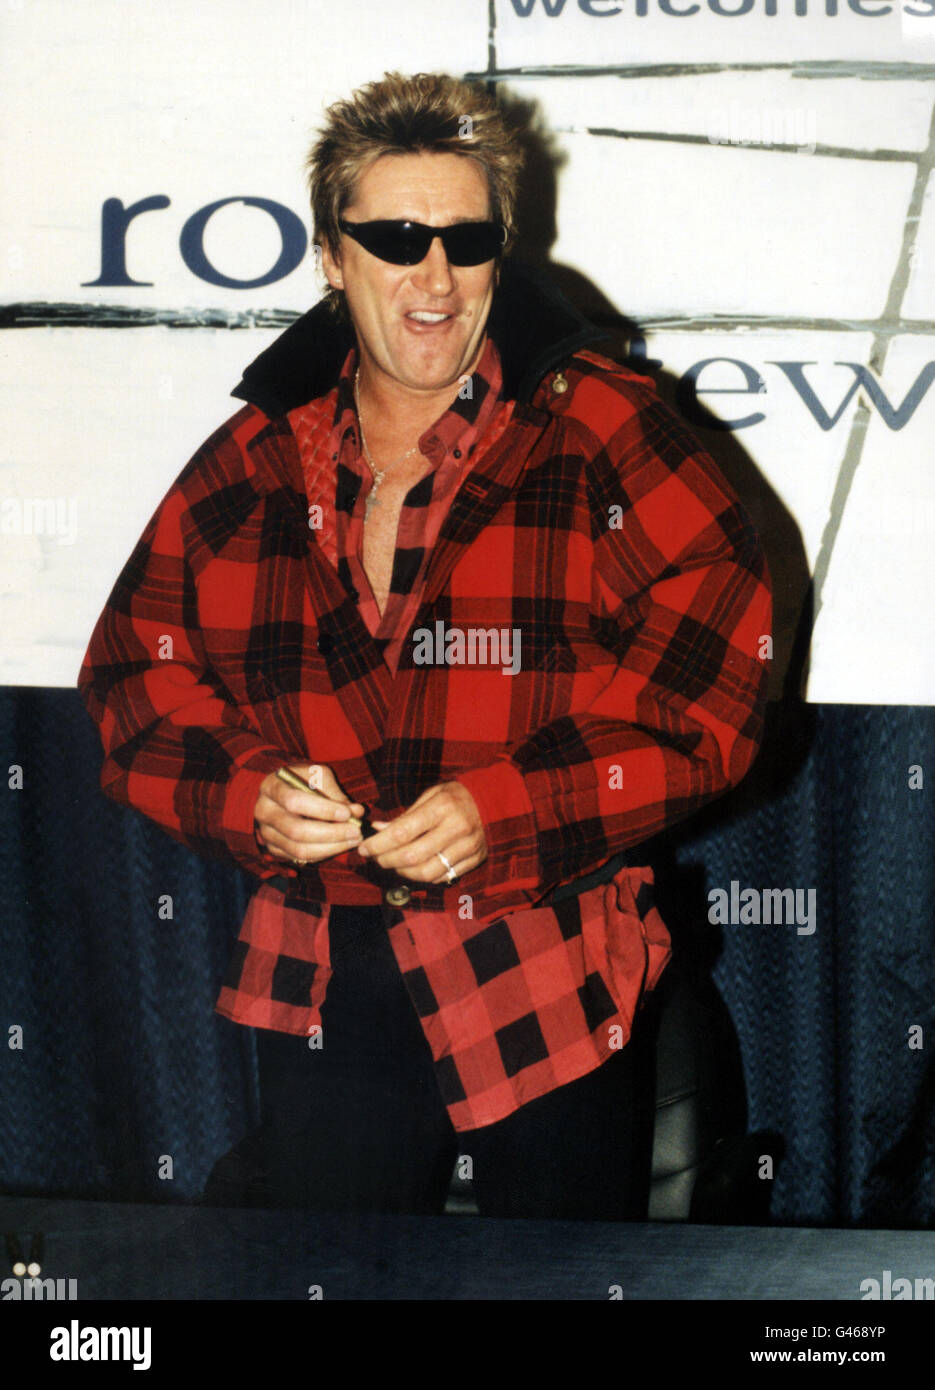 Londra : 7/11/96 : ROD STEWART al Tower Records a Piccadilly Circus, a Londra, dove ha firmato le copie del suo ultimo album "se possiamo cadere in amore stasera". PA NEWS FOTO DA NEIL MUNNS. Foto Stock